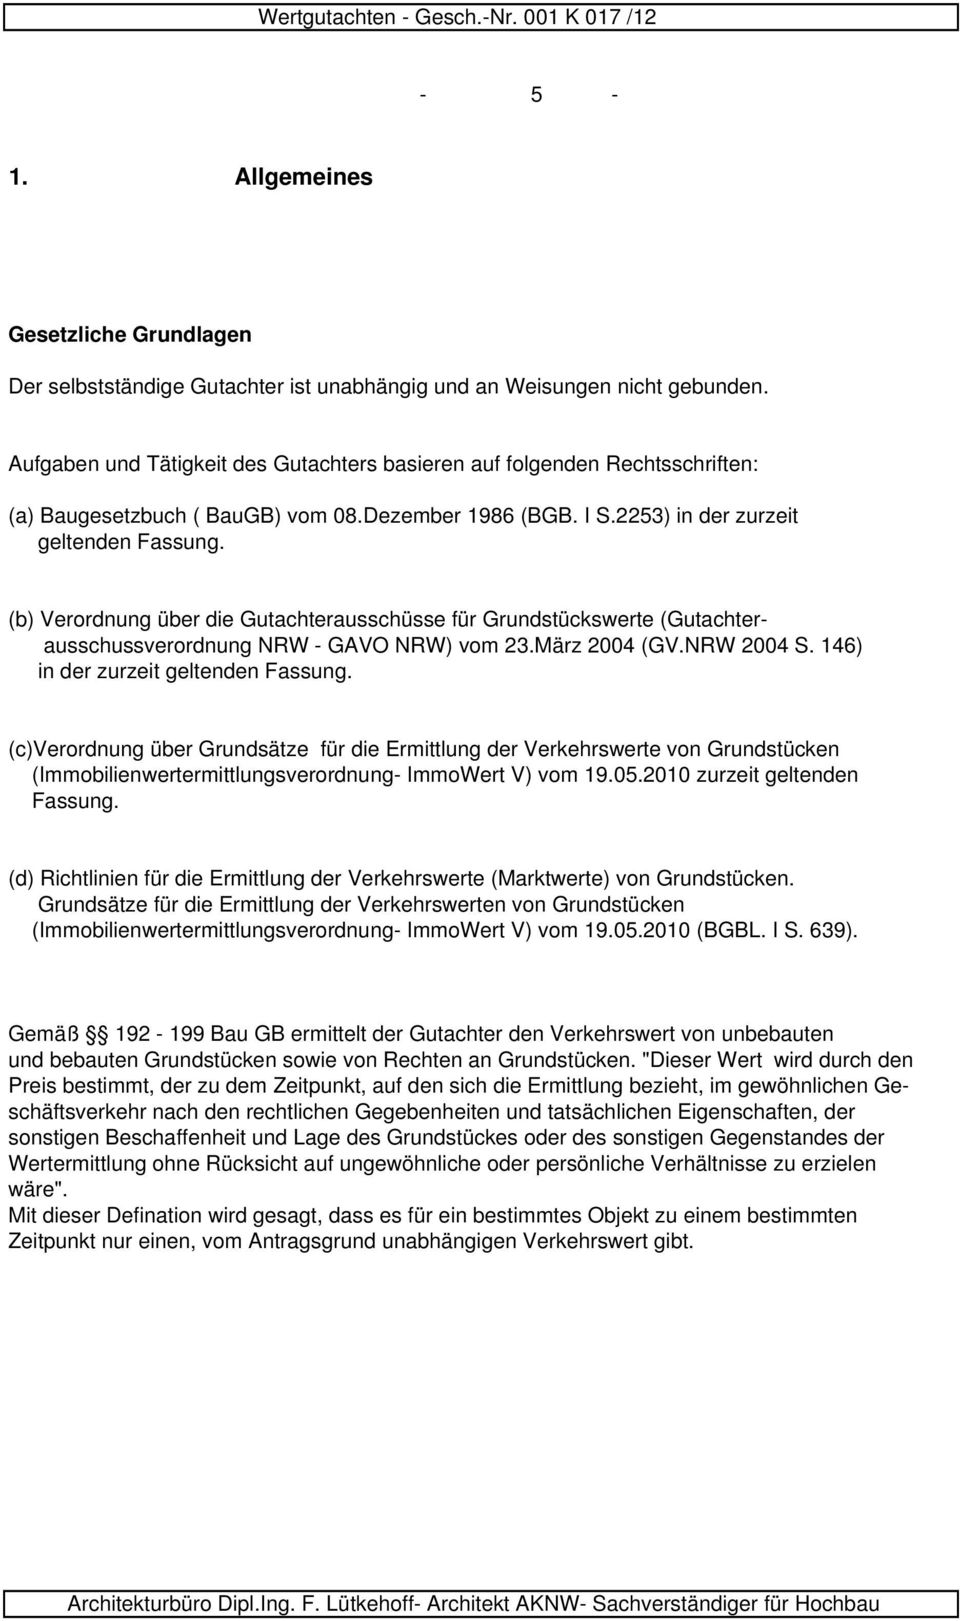 (b) Verordnung über die Gutachterausschüsse für Grundstückswerte (Gutachterausschussverordnung NRW - GAVO NRW) vom 23.März 2004 (GV.NRW 2004 S. 146) in der zurzeit geltenden Fassung.